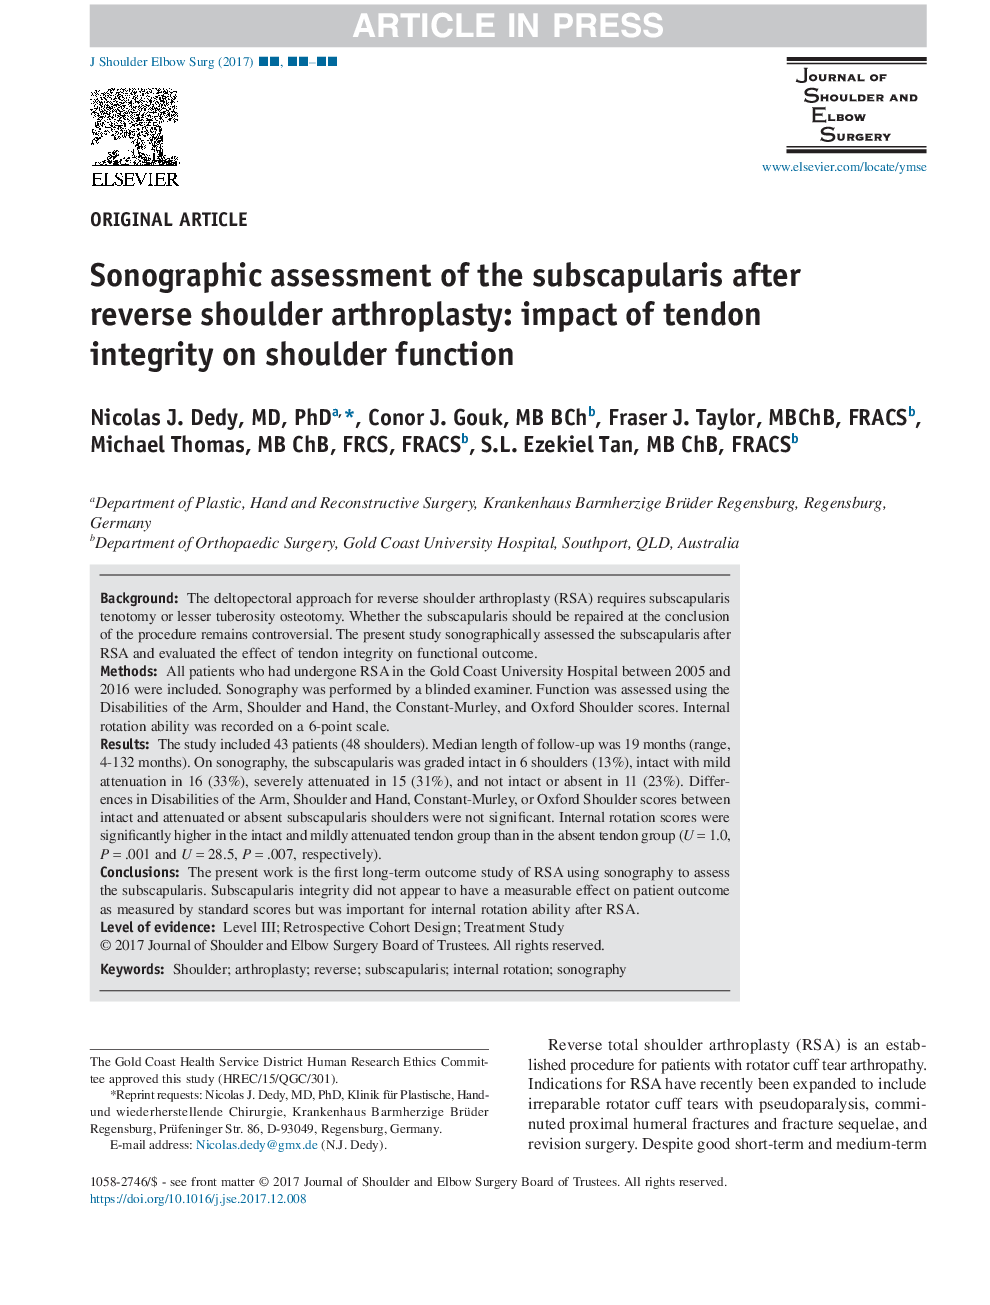 ارزیابی سونوگرافی پس از انفارکتوس پس از آرتروپلاستی شانه معکوس: اثر یکپارچگی تاندون بر عملکرد شانه 